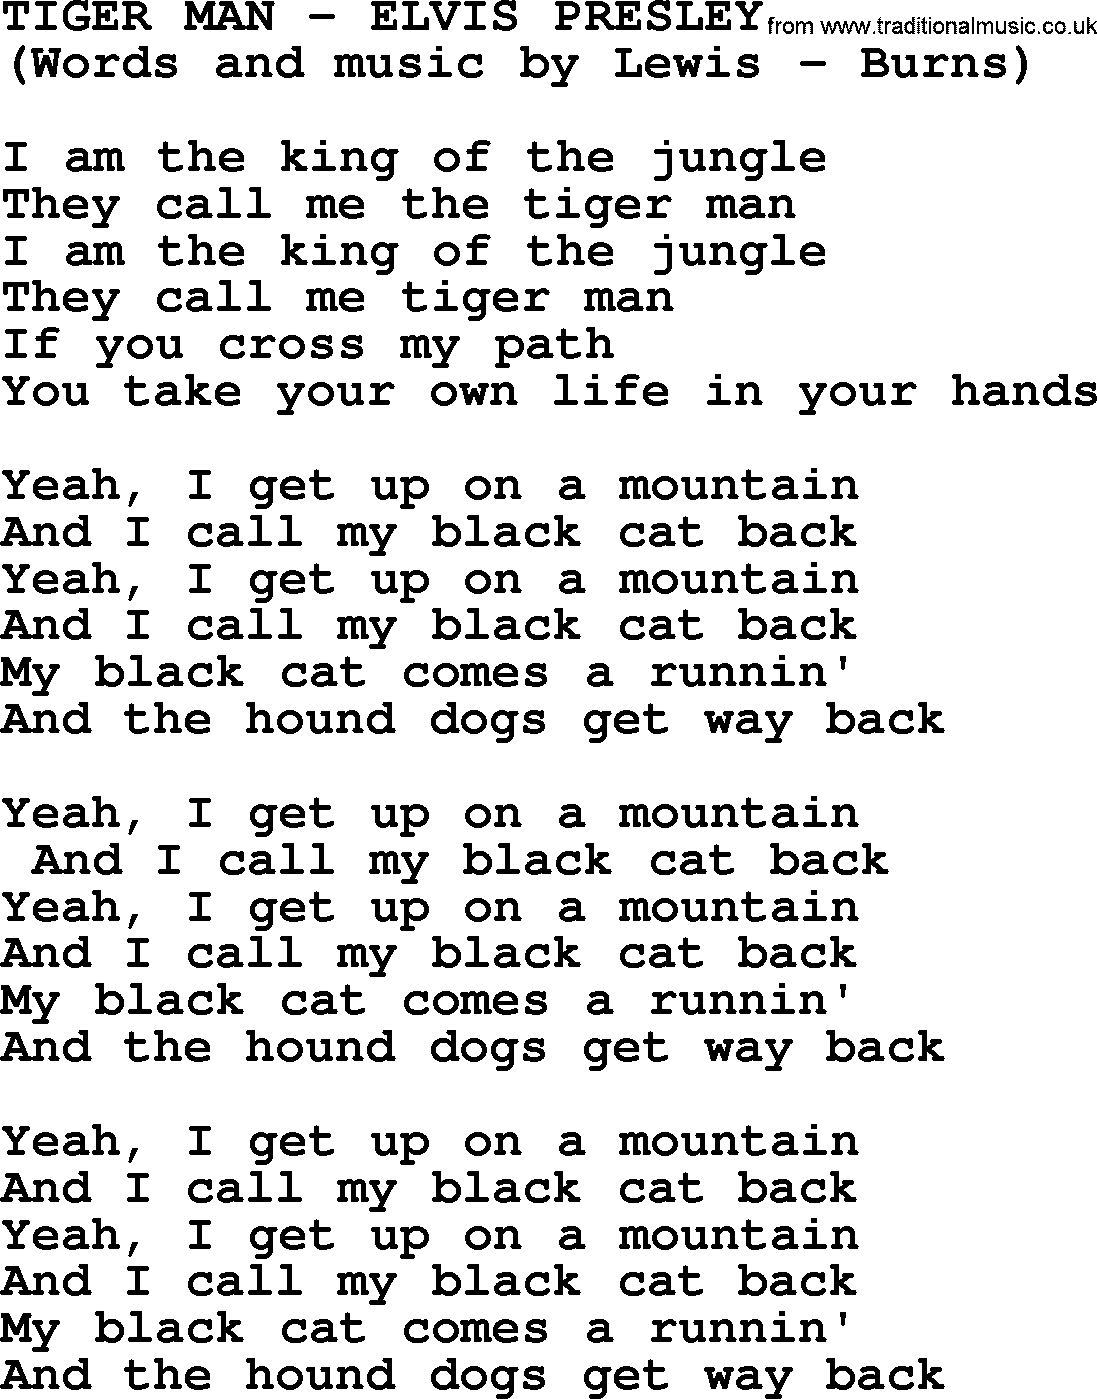 Elvis Presley song: Tiger Man lyrics